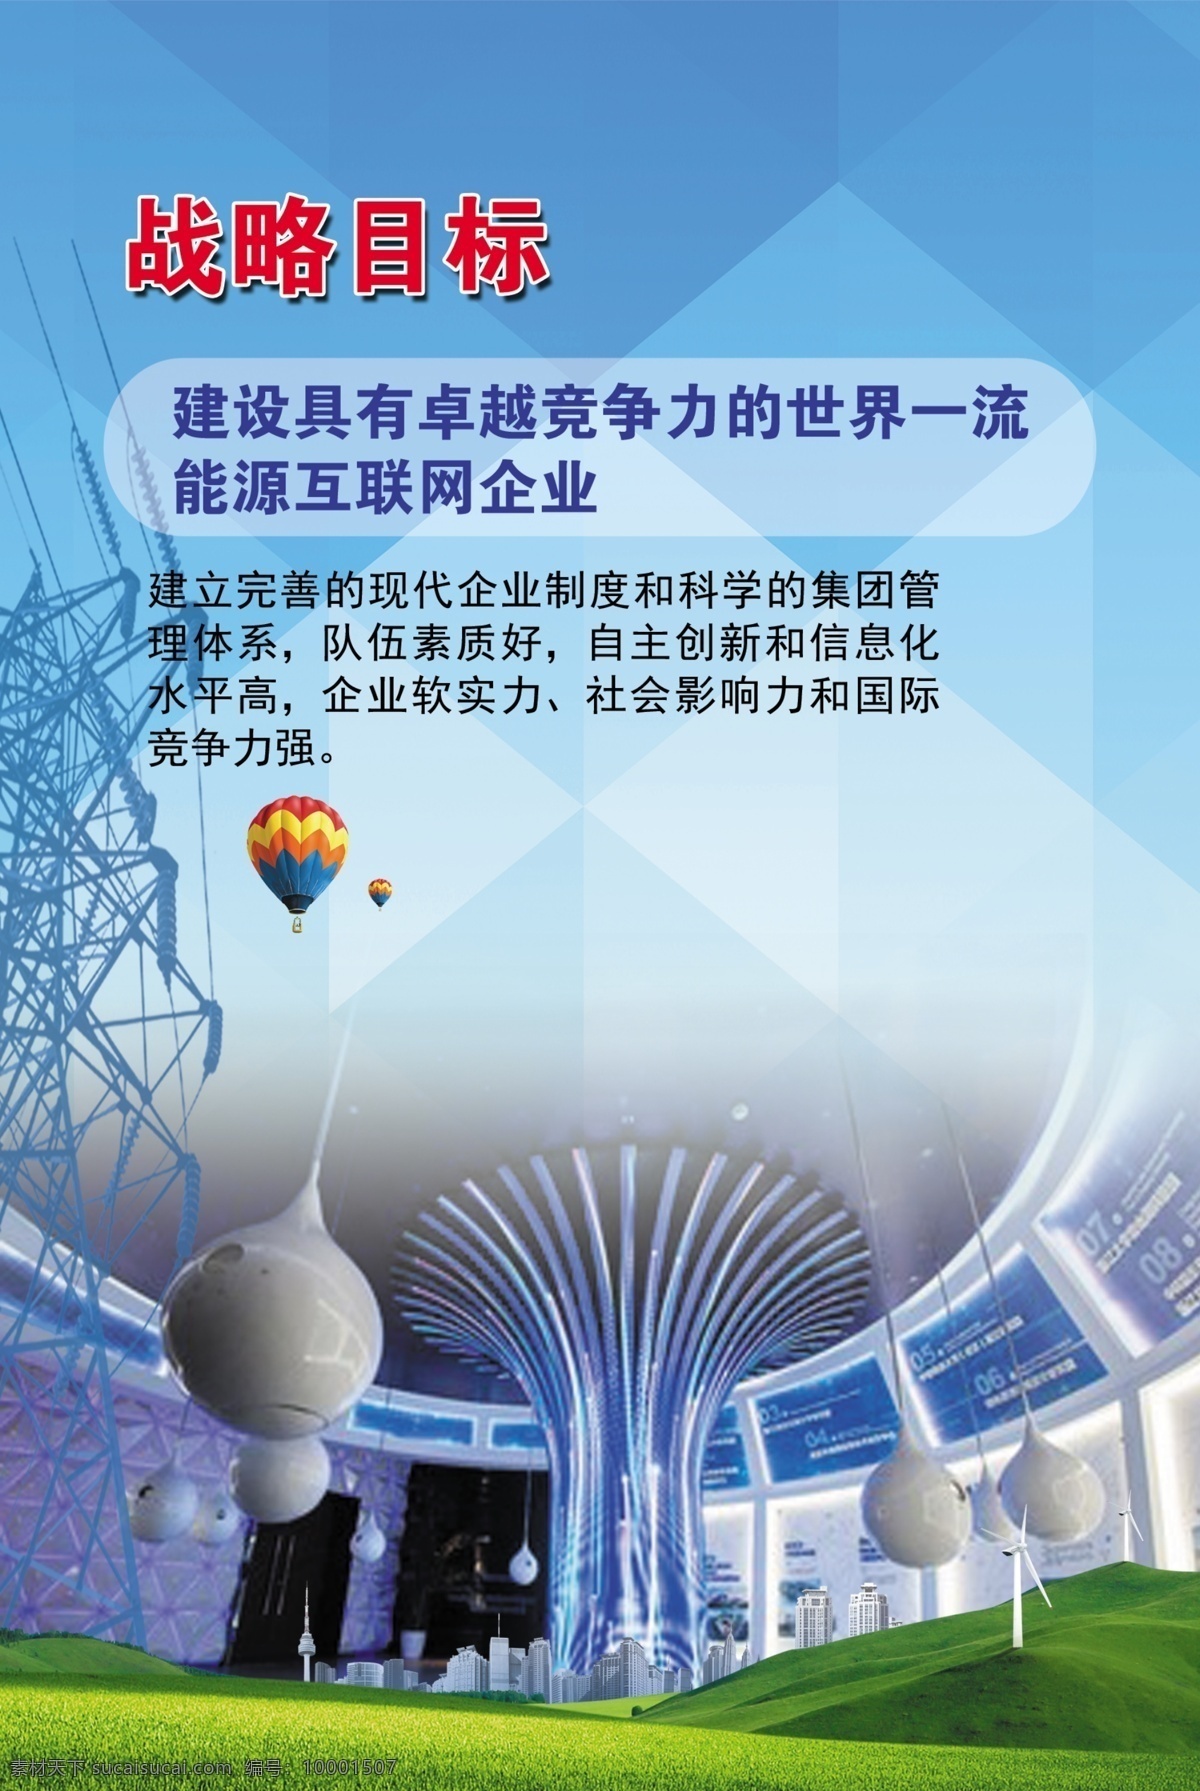 战略目标 国网 供电公司 电网 展厅 蓝色背景 企业文化